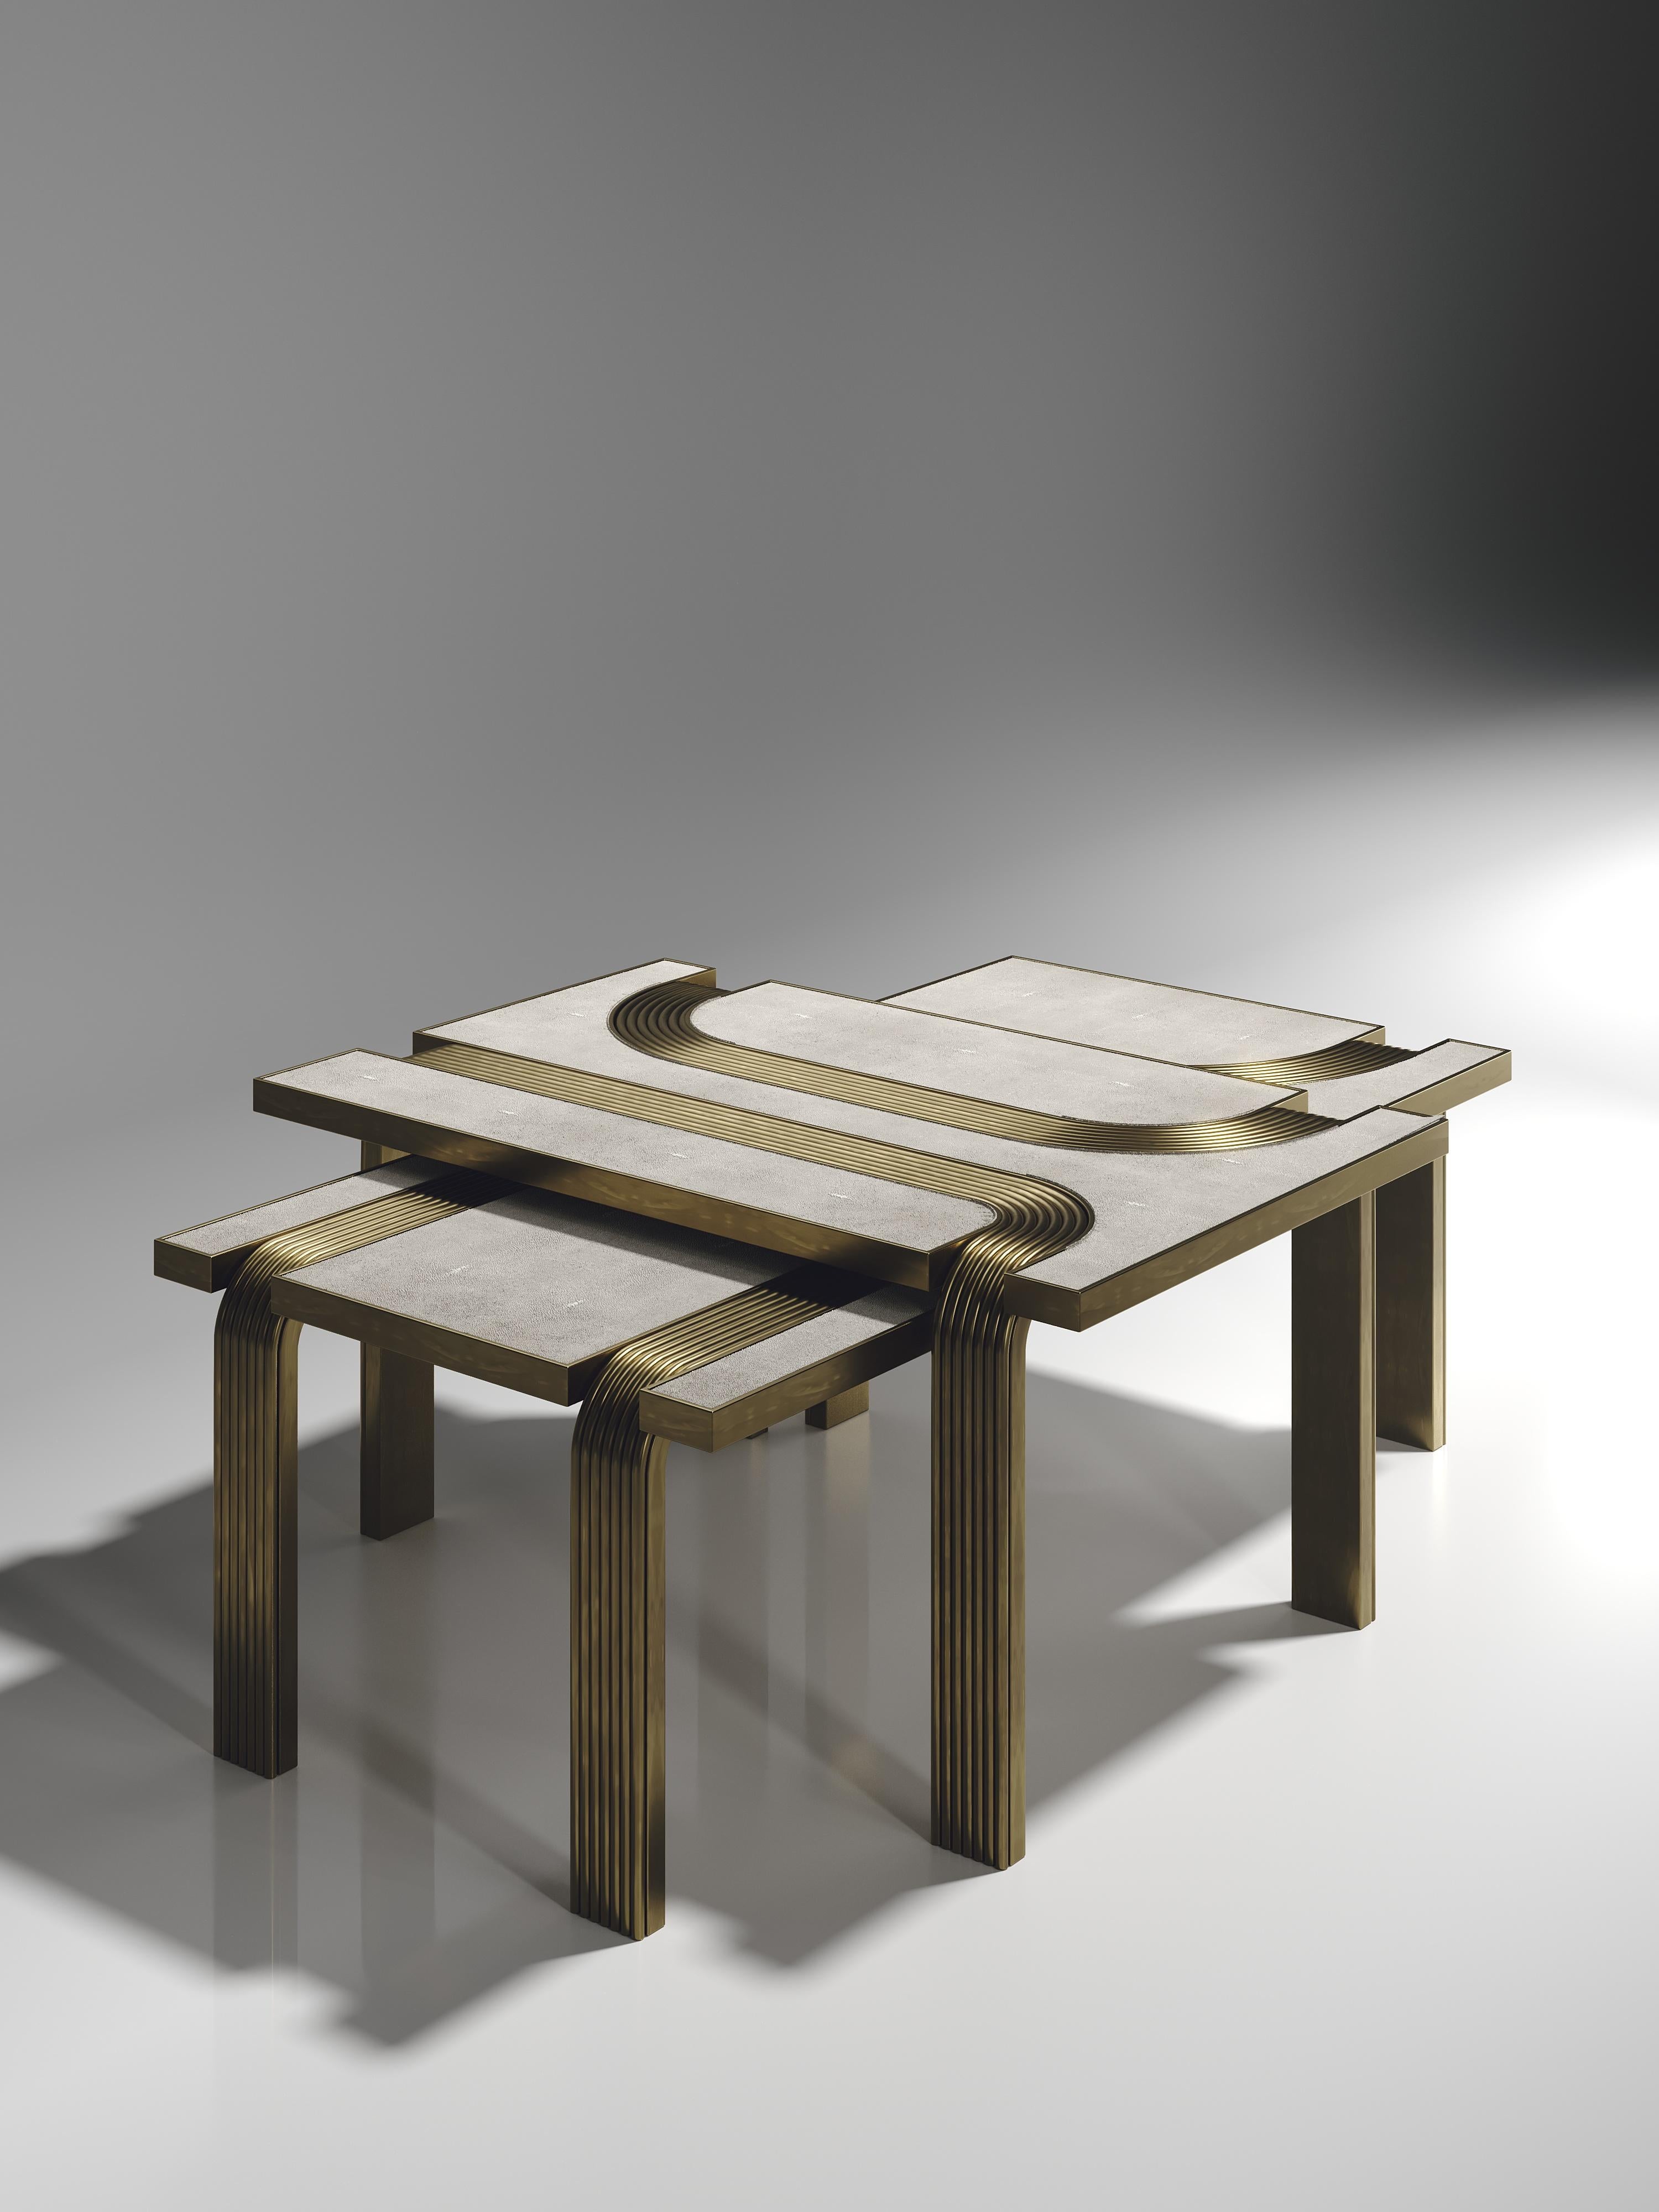 Le set de 2 tables basses gigognes Licol de R&Y Augousti en galuchat crème avec des détails en laiton bronze-patine explore l'ADN emblématique de la marque en apportant l'artisanat d'antan dans une ambiance contemporaine et tout à fait luxueuse. Ces